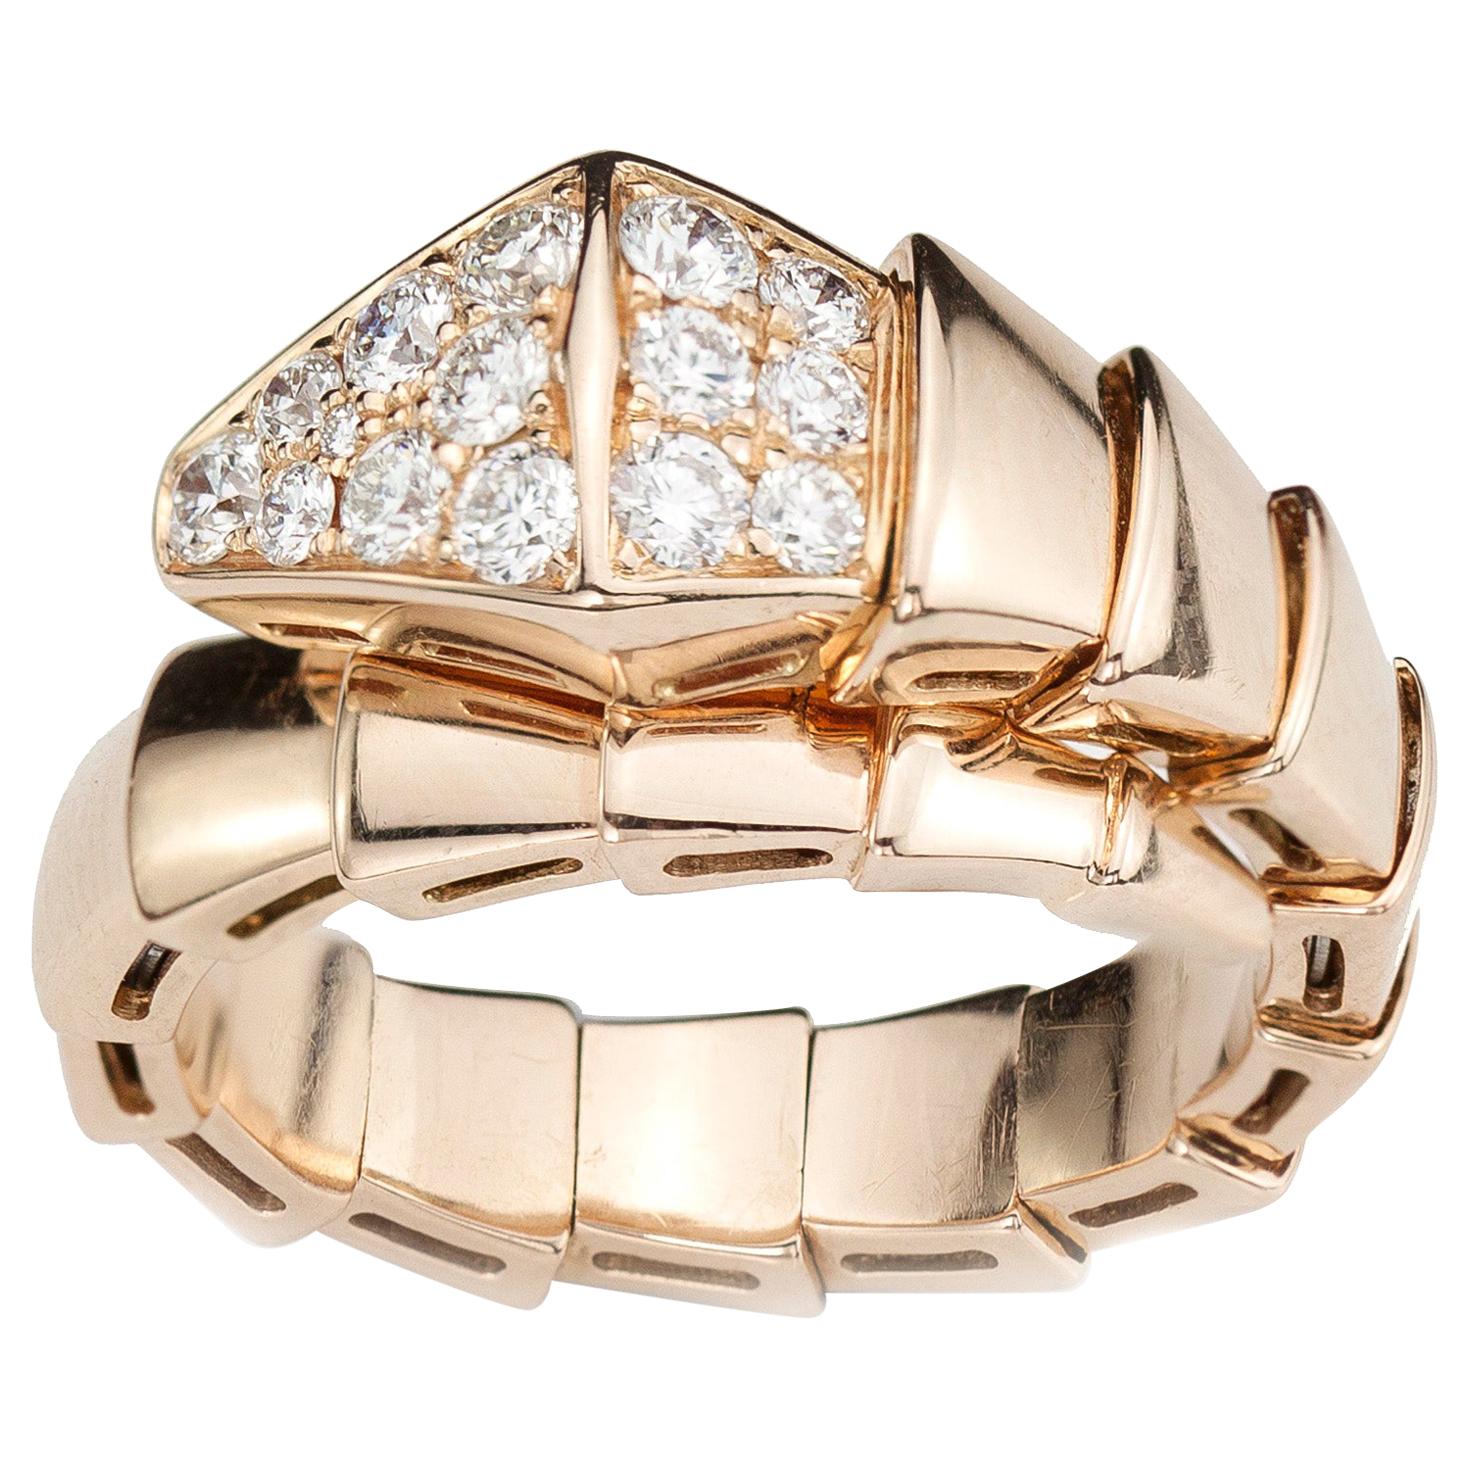 Bvlgari Serpenti 18 Karat Pink Gold Ring with Diamonds, Italy